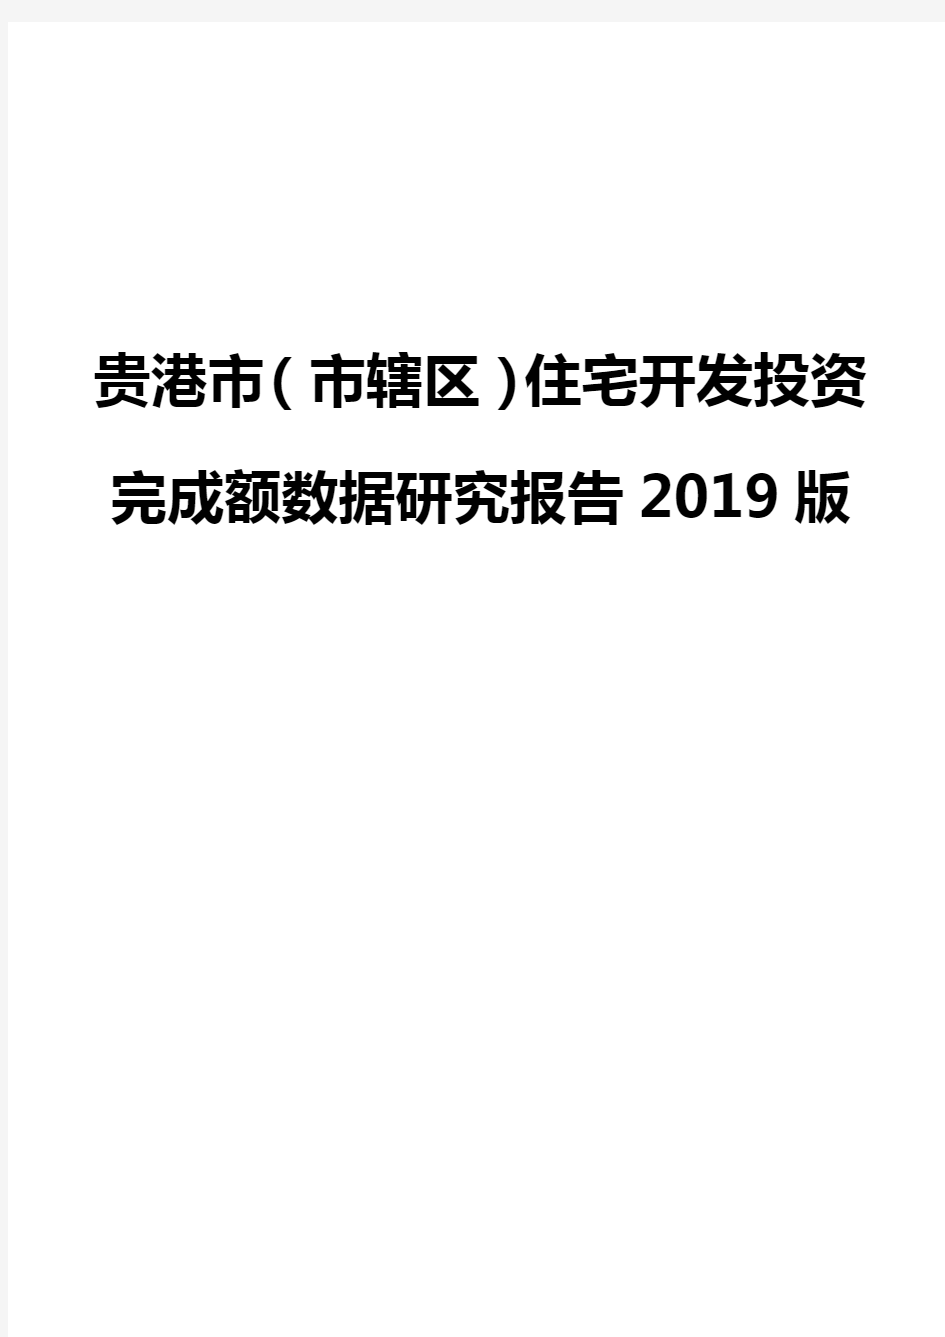 贵港市(市辖区)住宅开发投资完成额数据研究报告2019版